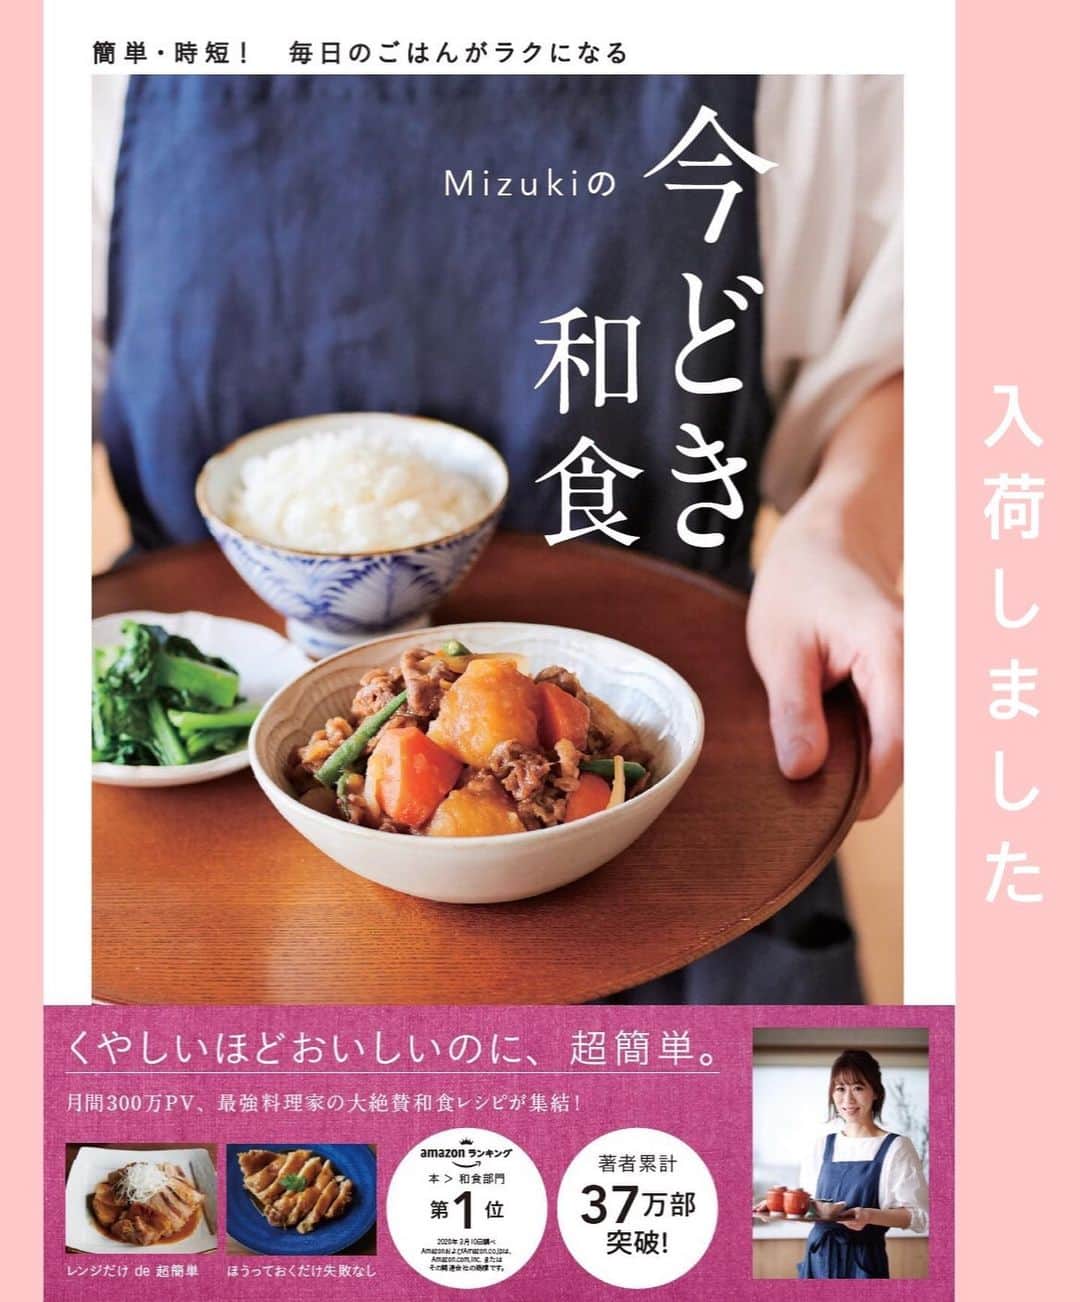 Mizuki【料理ブロガー・簡単レシピ】さんのインスタグラム写真 - (Mizuki【料理ブロガー・簡単レシピ】Instagram)「・﻿ 【レシピ】ーーーーーーーーーーーーー﻿ ♡パウンド型deバスクチーズケーキ♡﻿ ーーーーーーーーーーーーーーーーーー﻿ ﻿ ﻿ ﻿ おはようございます(*^^*)﻿ ﻿ 今日ご紹介させていただくのは﻿ パウンド型で作るバスクチーズケーキ♩﻿ 今回はクリチ1箱使い切りのレシピに﻿ アレンジして作りました(*^^*)﻿ 特徴である黒い表面は香ばしく﻿ 生地は濃厚な味わいですよ〜♡﻿ ﻿ 作り方は超簡単(*´艸`)﻿ 混ぜて焼くだけ！！﻿ しかも普通のチーズケーキと﻿ 同じ材料で作れます♡♡﻿ ﻿ 前回の(丸型で作る)レシピはこちら▼﻿ #バスク風チーズケーキm﻿ ﻿ ﻿ ﻿ ーーーーーーーーーーーーーーーーーーーー﻿ 【18cmパウンド型】﻿ クリームチーズ...200g﻿ 砂糖...60g﻿ 卵...2個﻿ 薄力粉...大1 レモン汁...小1﻿ 生クリーム...150ml﻿ ﻿ (準備)クリームチーズは常温に戻す。型にクッキングシートを敷く。オーブンを220度に予熱する。﻿ 1.ボウルにクリームチーズを入れ、泡立て器でなめらかに混ぜる。砂糖→卵→薄力粉(ふるう)→レモン汁→生クリームの順に加え、その都度よく混ぜる(あまり泡立てないように)。﻿ 2.型に注ぎ、予熱したオーブンで35分焼く。焼けたらアミにのせて冷まし、冷蔵庫で一晩寝かせる。﻿ ーーーーーーーーーーーーーーーーーーーー﻿ ﻿ ﻿ ﻿ 《ポイント》﻿ ♦︎クリームチーズはレンジで30〜40秒加熱すると柔らかくなります♩﻿ ♦︎生地の材料を混ぜる時はなるべく泡立てないように、すり混ぜるように混ぜて下さい♩﻿ ♦︎型ごと冷やして下さい♩型とシートの間にナイフを入れると取り出しやすいですよ♩ ♦︎焼き立てはよく膨らみますが冷ますと落ち着きます♩﻿ ﻿ ﻿ ﻿ ﻿ ﻿ ﻿ ＿＿＿＿＿＿＿＿＿＿＿＿＿＿＿＿＿﻿ 🎀6刷重版しました🎀﻿ 混ぜて焼くだけ。はじめてでも失敗しない！﻿ 【#ホットケーキミックスのお菓子 】﻿ ﻿ 一冊まるっとホケミスイーツ♩﻿ 普段のおやつから﻿ 特別な日にも使えるレシピを﻿ この一冊に詰め込みました(*^^*)﻿ ホットケーキミックスを使えば﻿ 簡単に本格的なお菓子が作れますよ♡﻿ ＿＿＿＿＿＿＿＿＿＿＿＿＿＿＿＿＿﻿ ﻿ ﻿ ﻿ ＿＿＿＿＿＿＿＿＿＿＿＿＿＿＿＿＿＿＿﻿ 📕6刷重版しました📕﻿ 簡単・時短！ 毎日のごはんがラクになる﻿ ✨🦋 【 #Mizukiの今どき和食 】🦋✨﻿ ＿＿＿＿＿＿＿＿＿＿＿＿＿＿＿＿＿＿＿﻿ なるべく少ない材料で﻿ 手間も時間も省きながら﻿ 簡単にできるおいしい和食レシピ♩﻿ 簡単に失敗なくマスターできる一冊で﻿ もっと気軽に、カジュアルに﻿ 和食を楽しんで下さいね(*^^*)﻿ ＿＿＿＿＿＿＿＿＿＿＿＿＿＿＿＿＿＿＿﻿ ﻿ ⭐️ストーリー、ハイライト、プロフ画面に﻿ 本のURLを貼らせていただいております♩﻿ →(@mizuki_31cafe )﻿ ﻿ ﻿ ﻿ ﻿ ﻿ #バスクチーズケーキ#チーズケーキ#パウンド型#お菓子#お菓子作りならコッタ#Mizuki#簡単レシピ#時短レシピ#節約レシピ#料理#レシピ#フーディーテーブル#マカロニメイト#おうちごはん#デリスタグラマー#料理好きな人と繋がりたい#おうちごはんlover#写真好きな人と繋がりたい#foodpic#cooking#recipe#lin_stagrammer#foodporn#yummy#バスクチーズケーキm」7月26日 7時14分 - mizuki_31cafe